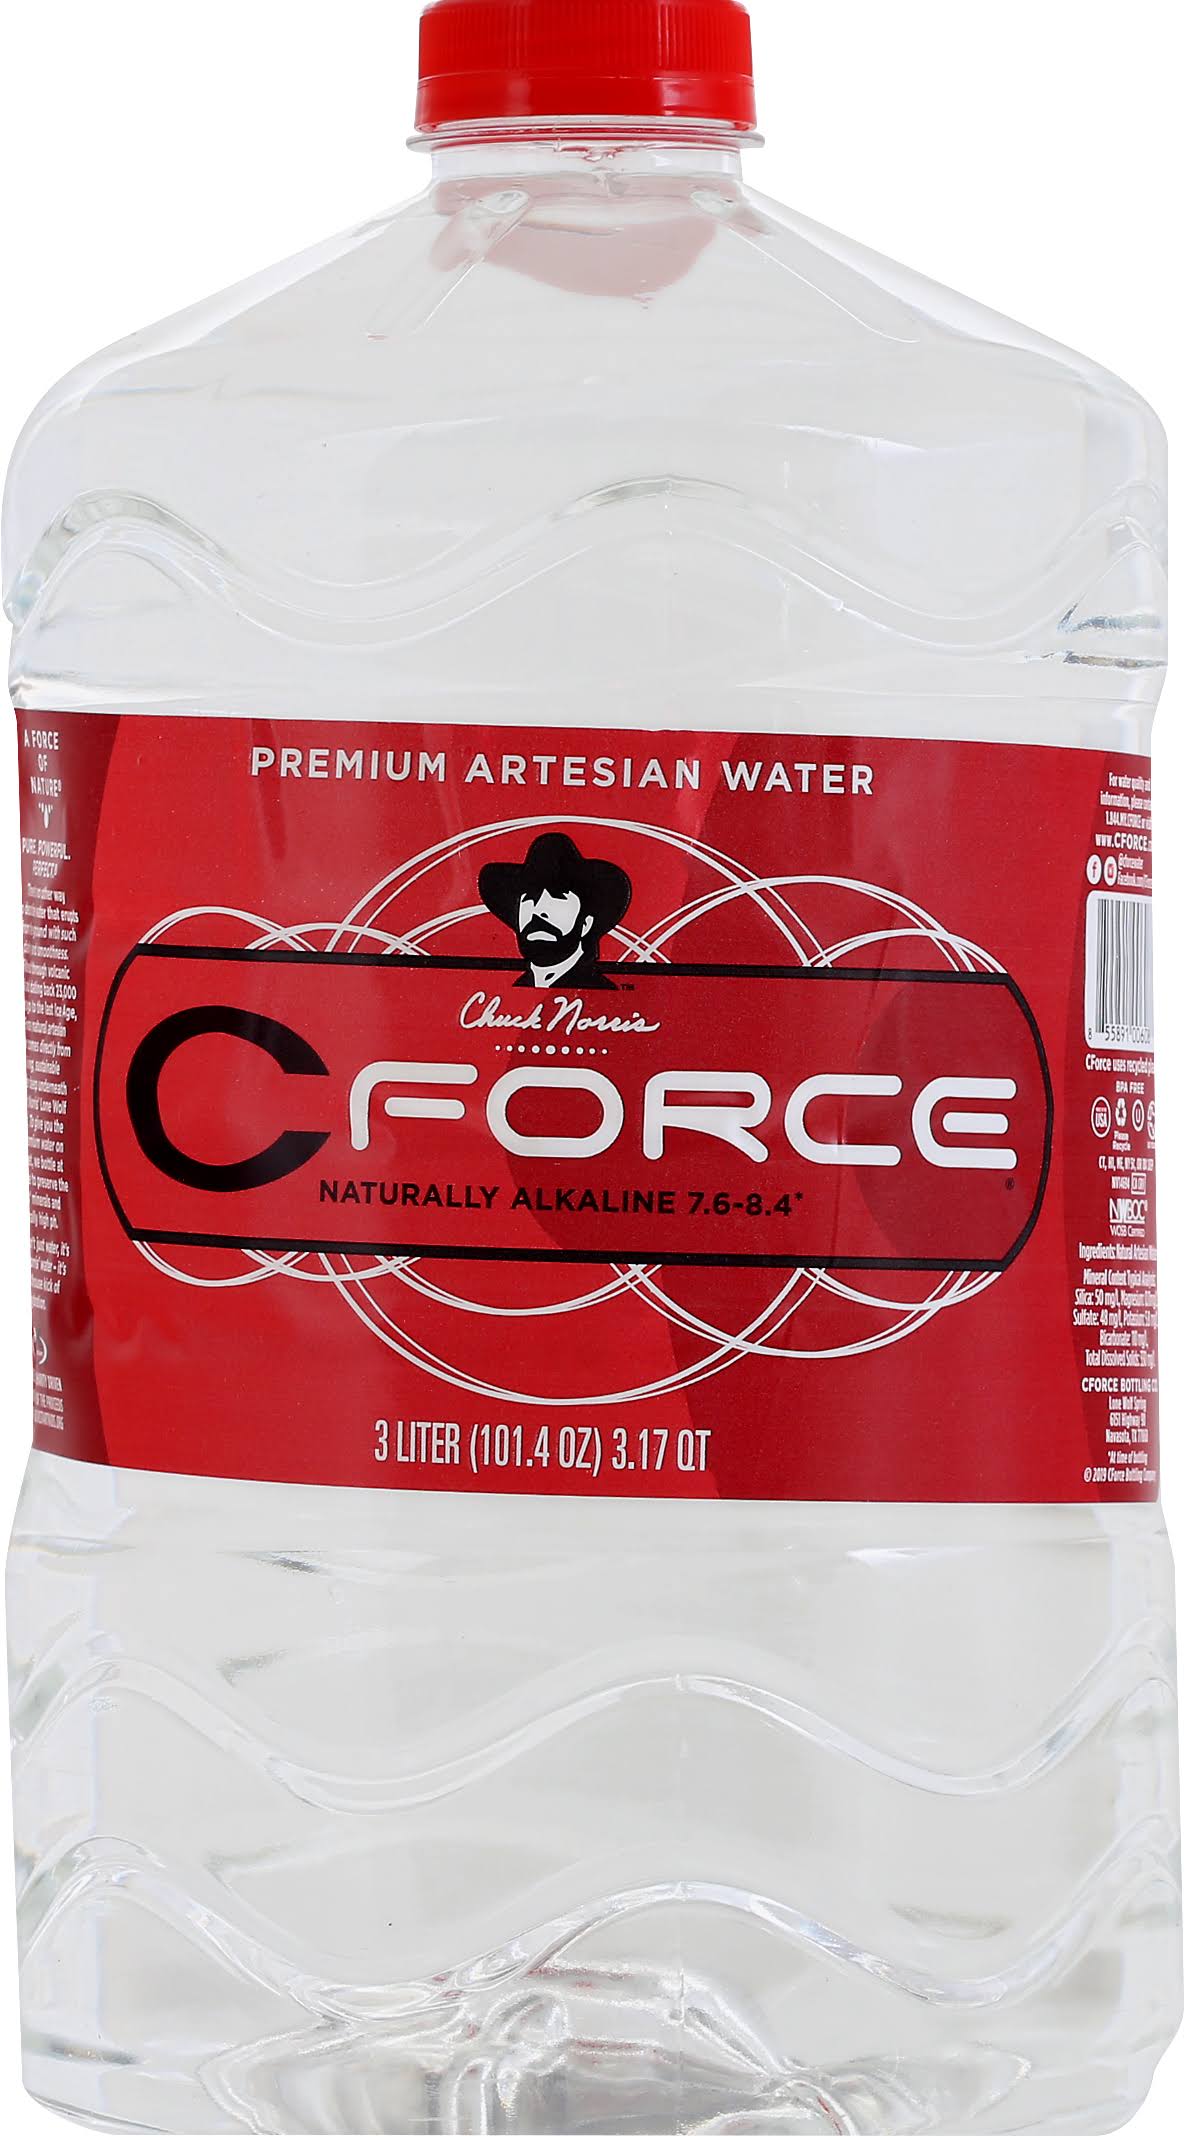 Cforce Artesian Water, Premium - 3 liter